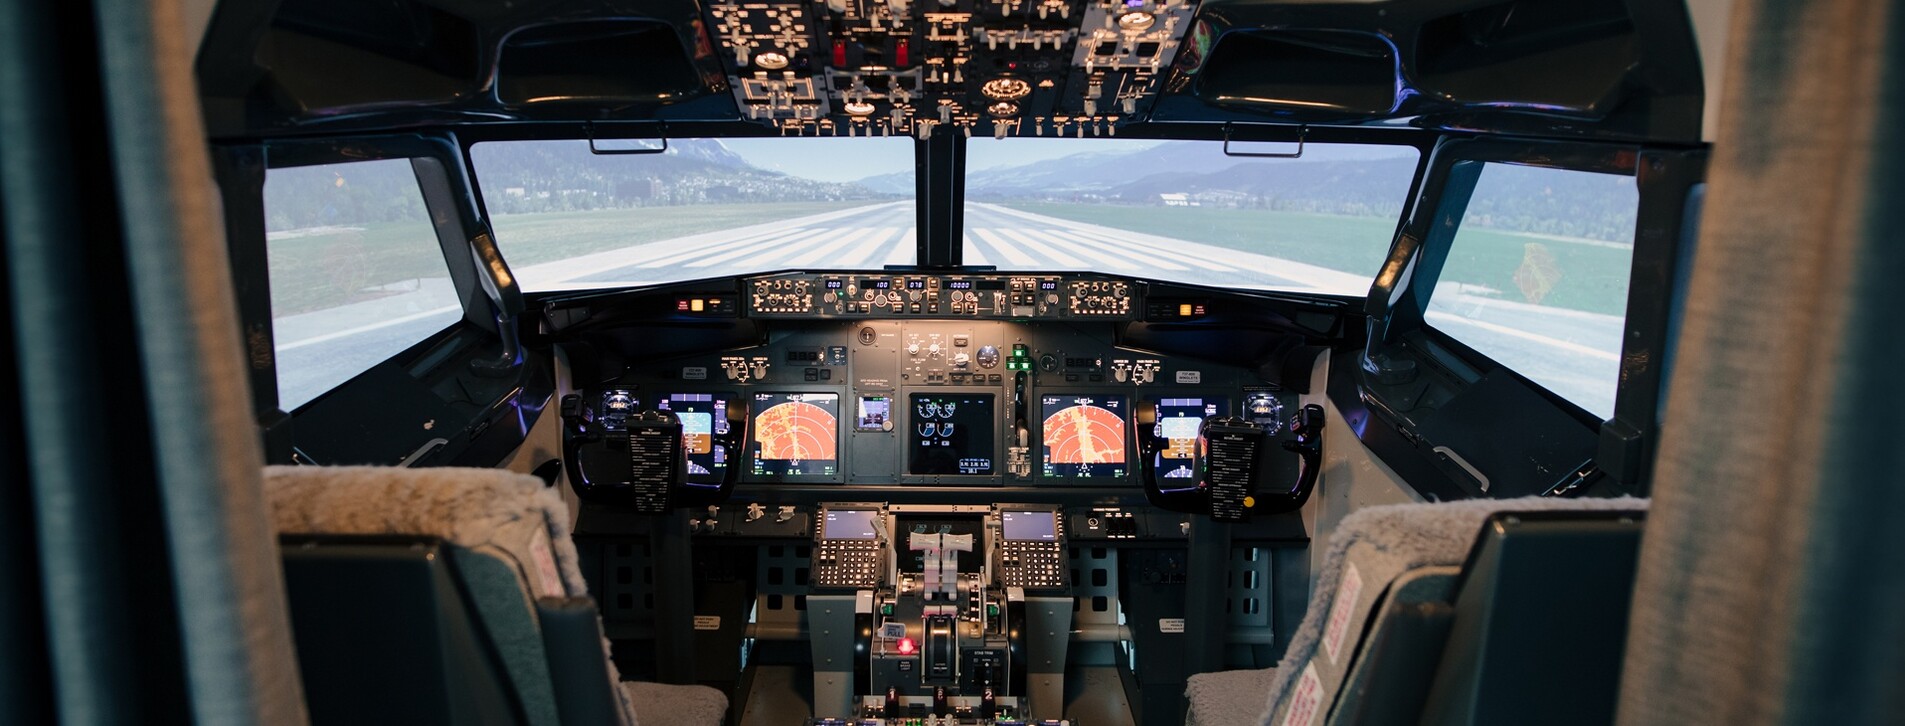 Фото 1 - Авиасимулятор Boeing-737 для двоих